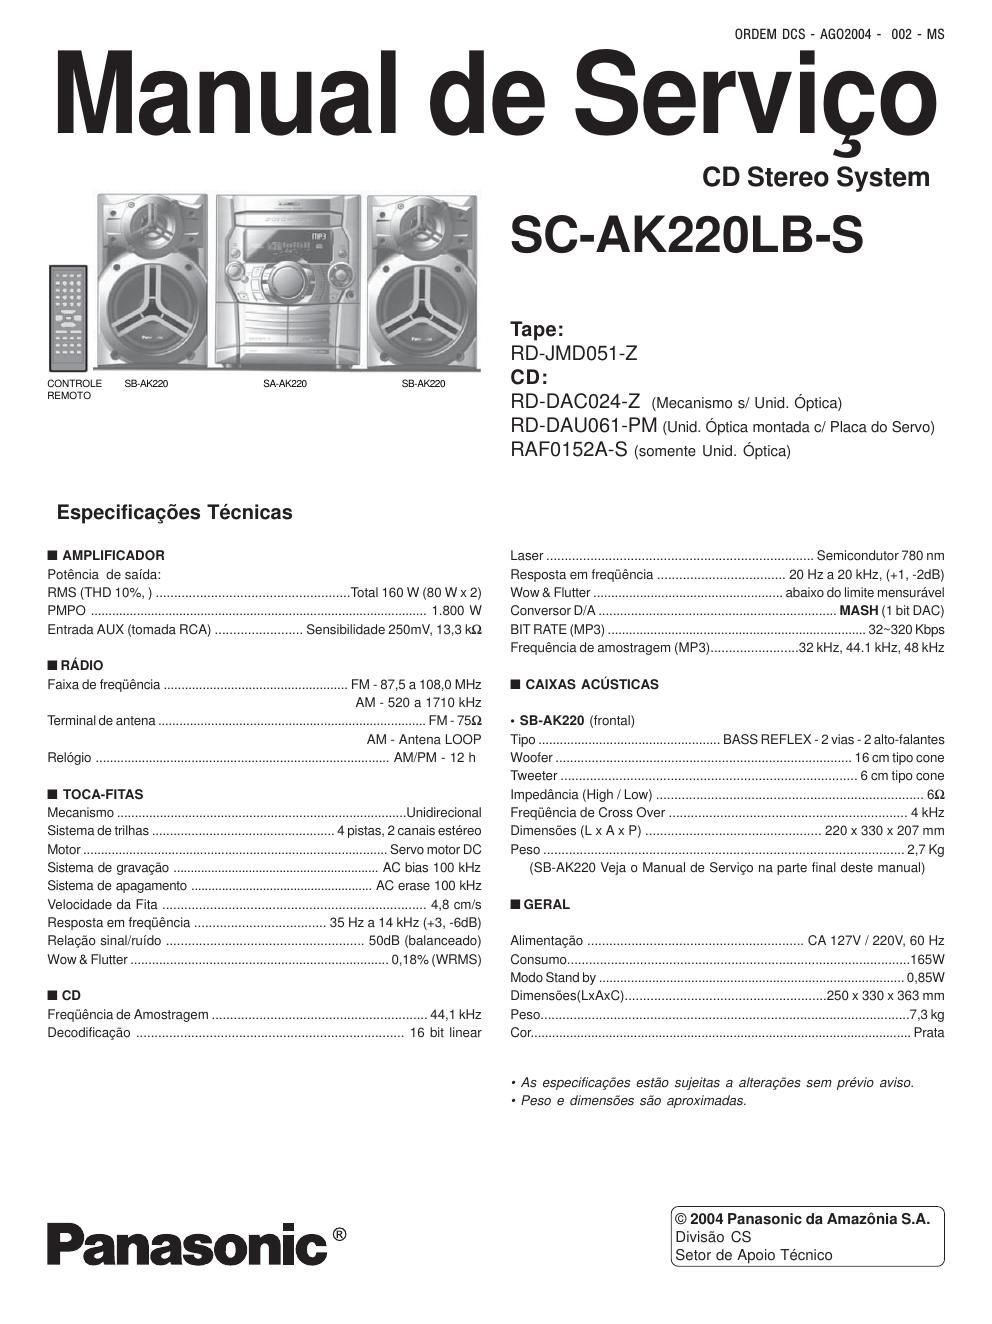 panasonic sc ak 220 lbs service manual